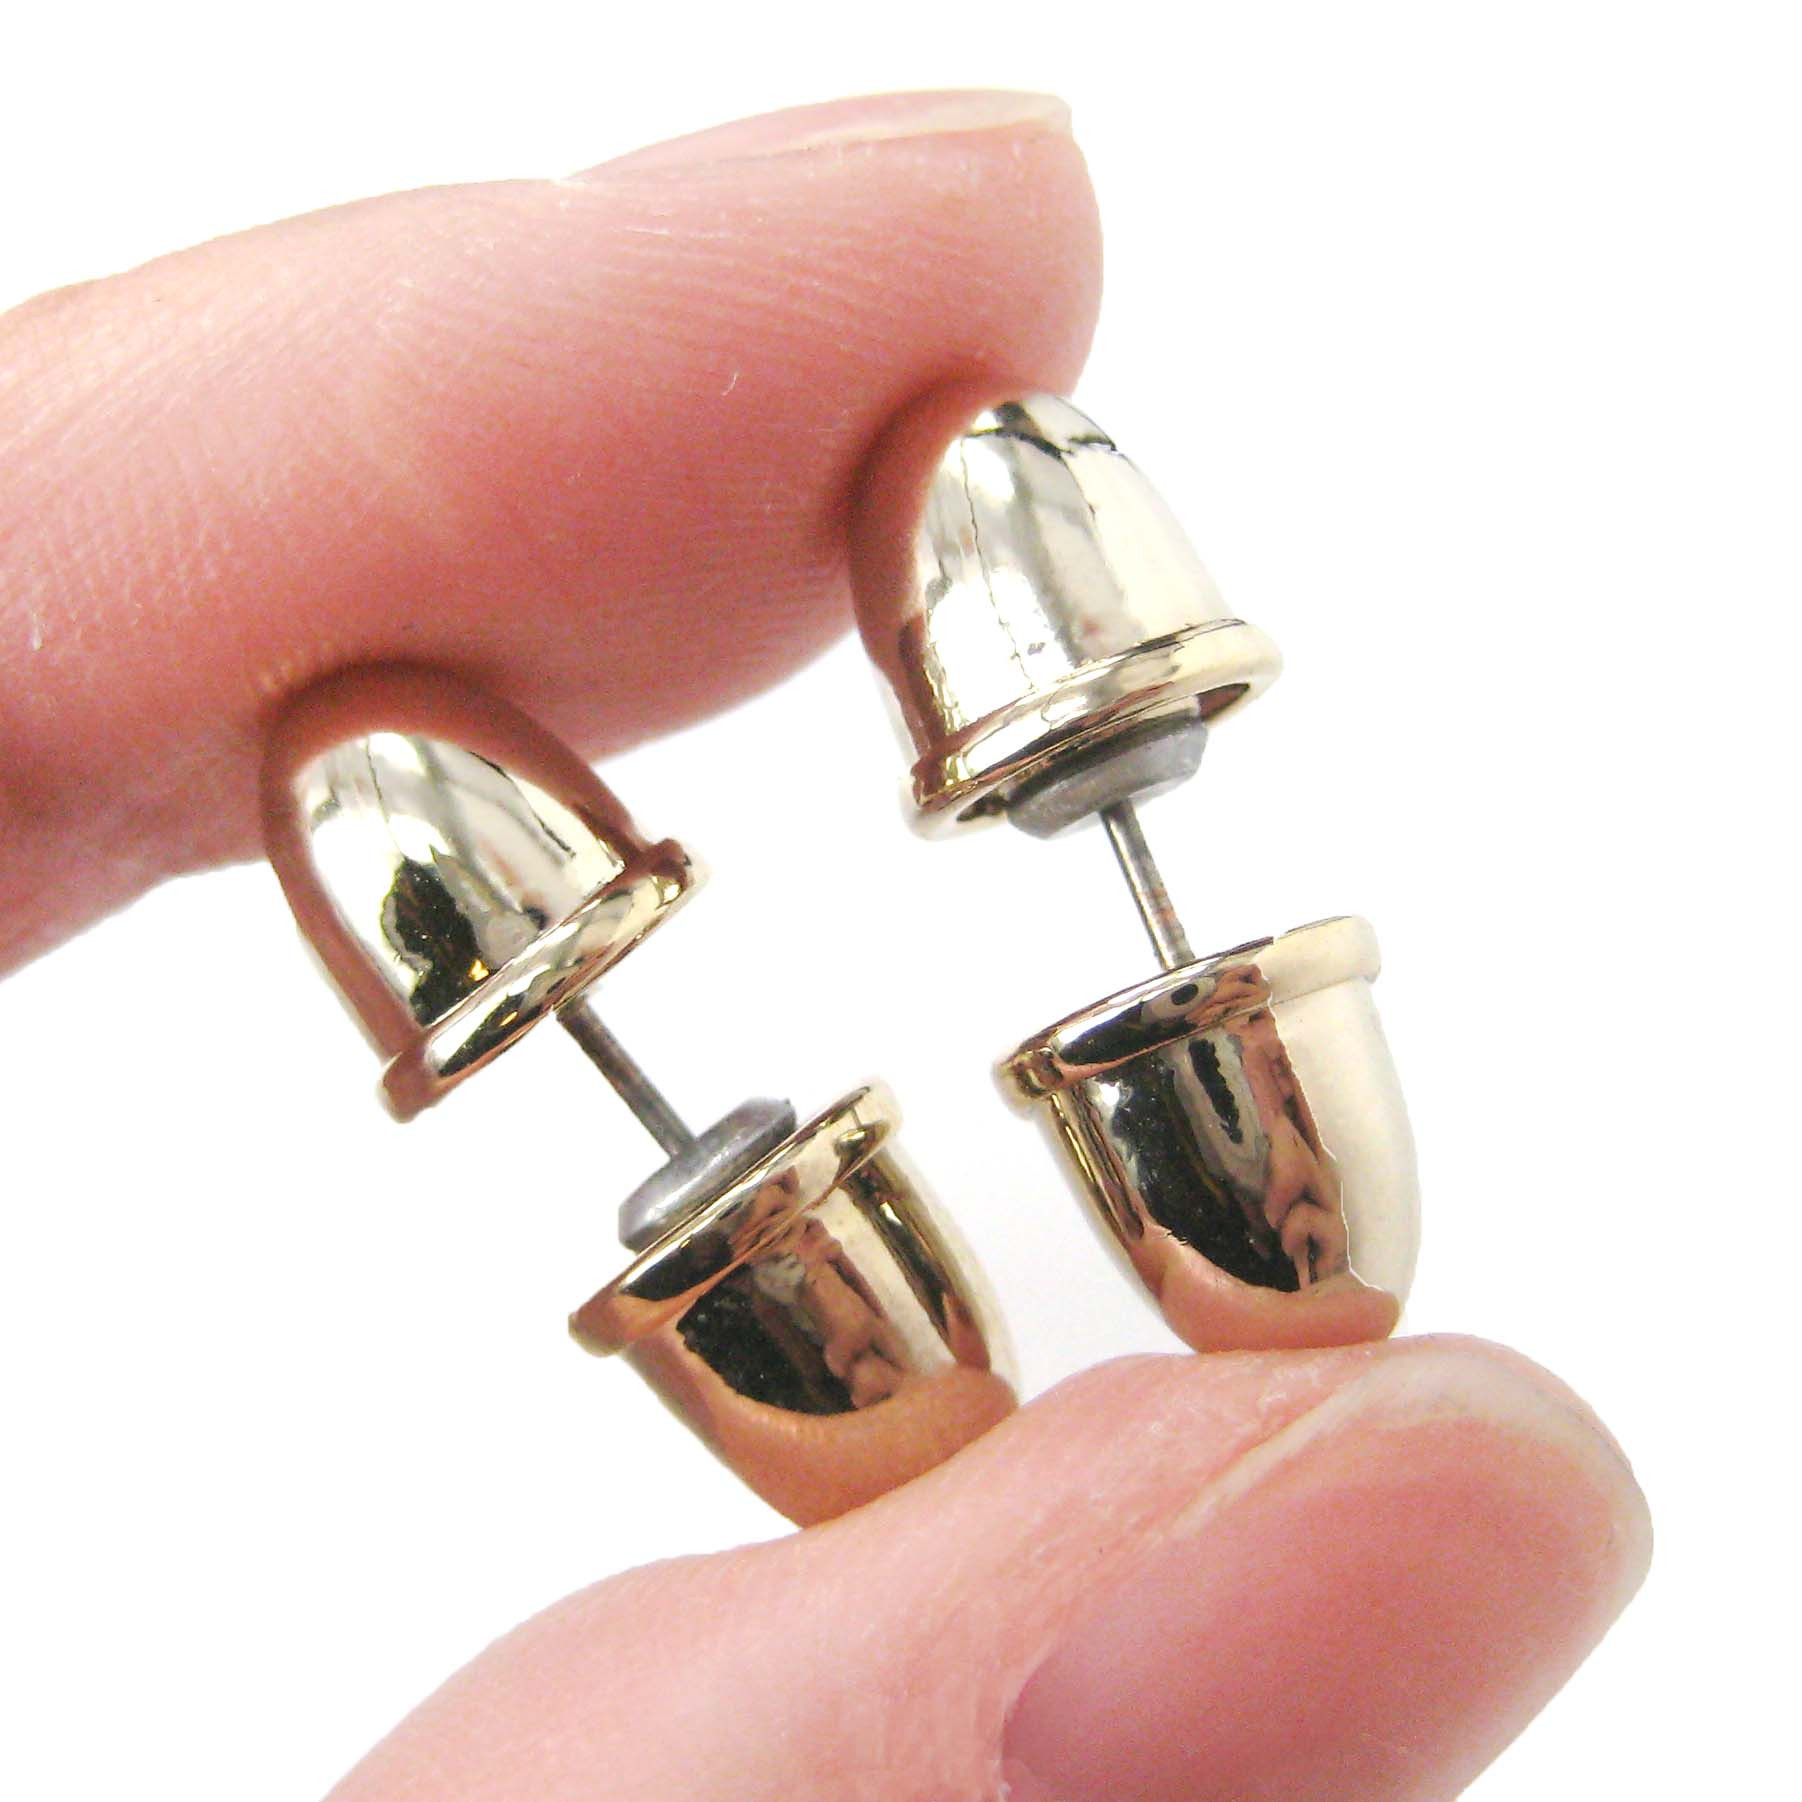 Fake Gauge Earrings
 Bullet Shaped Faux Plug Fake Gauge Stud Earrings in Shiny